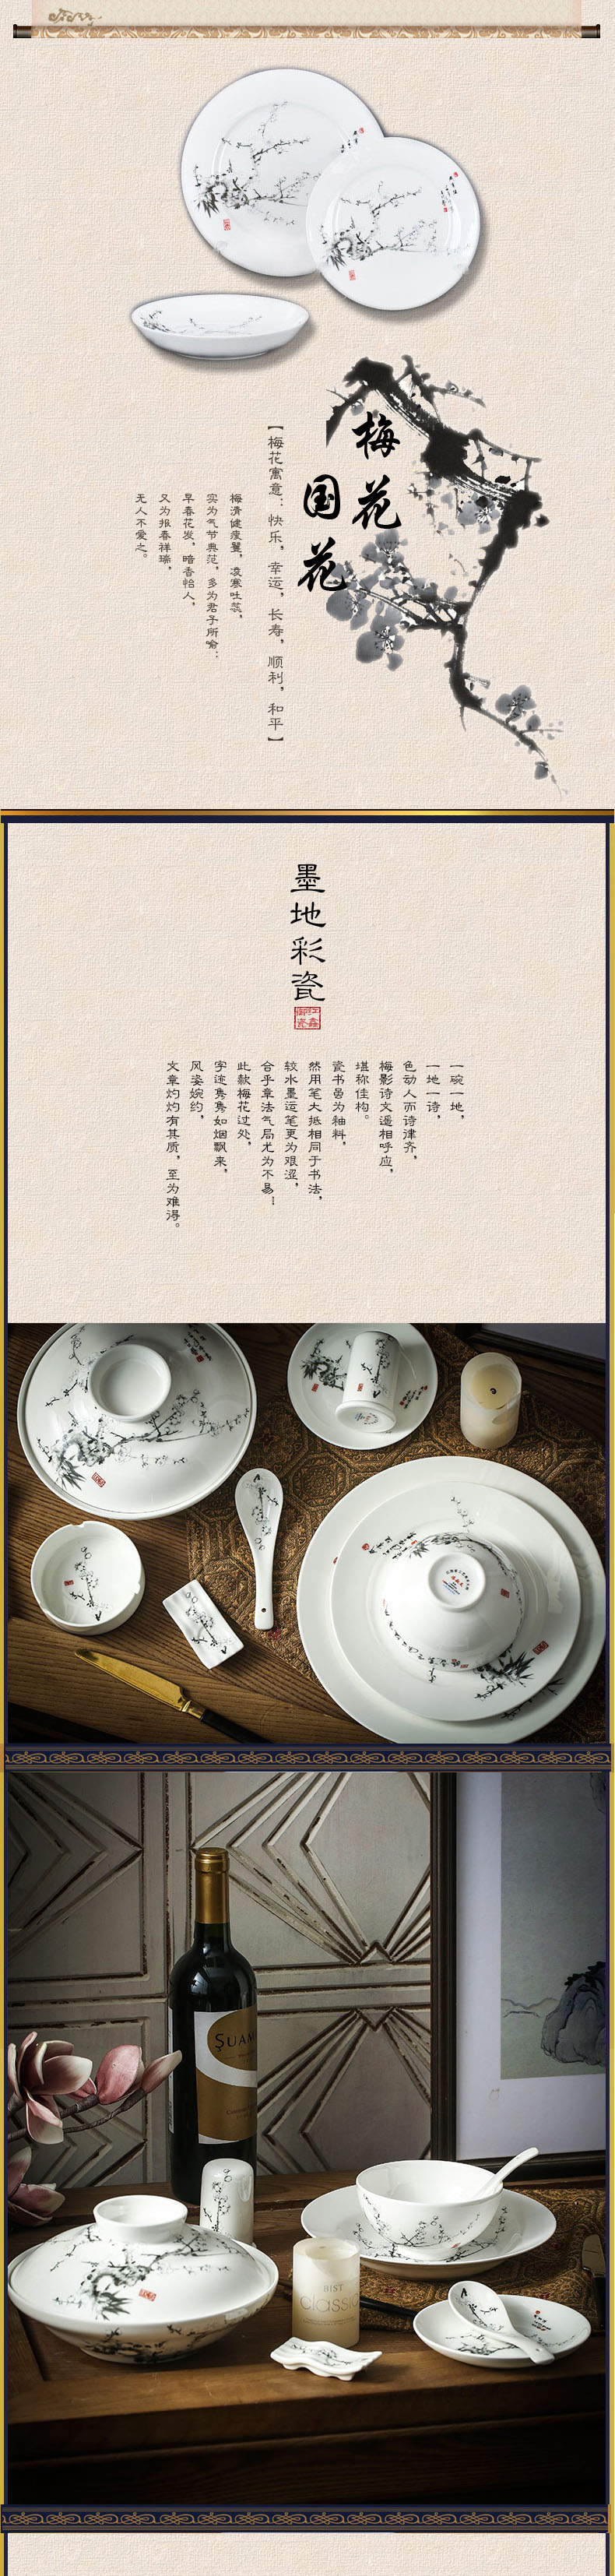 Red xin master design 80 skull porcelain tableware suit dish dish jingdezhen ceramic tableware bowl dish